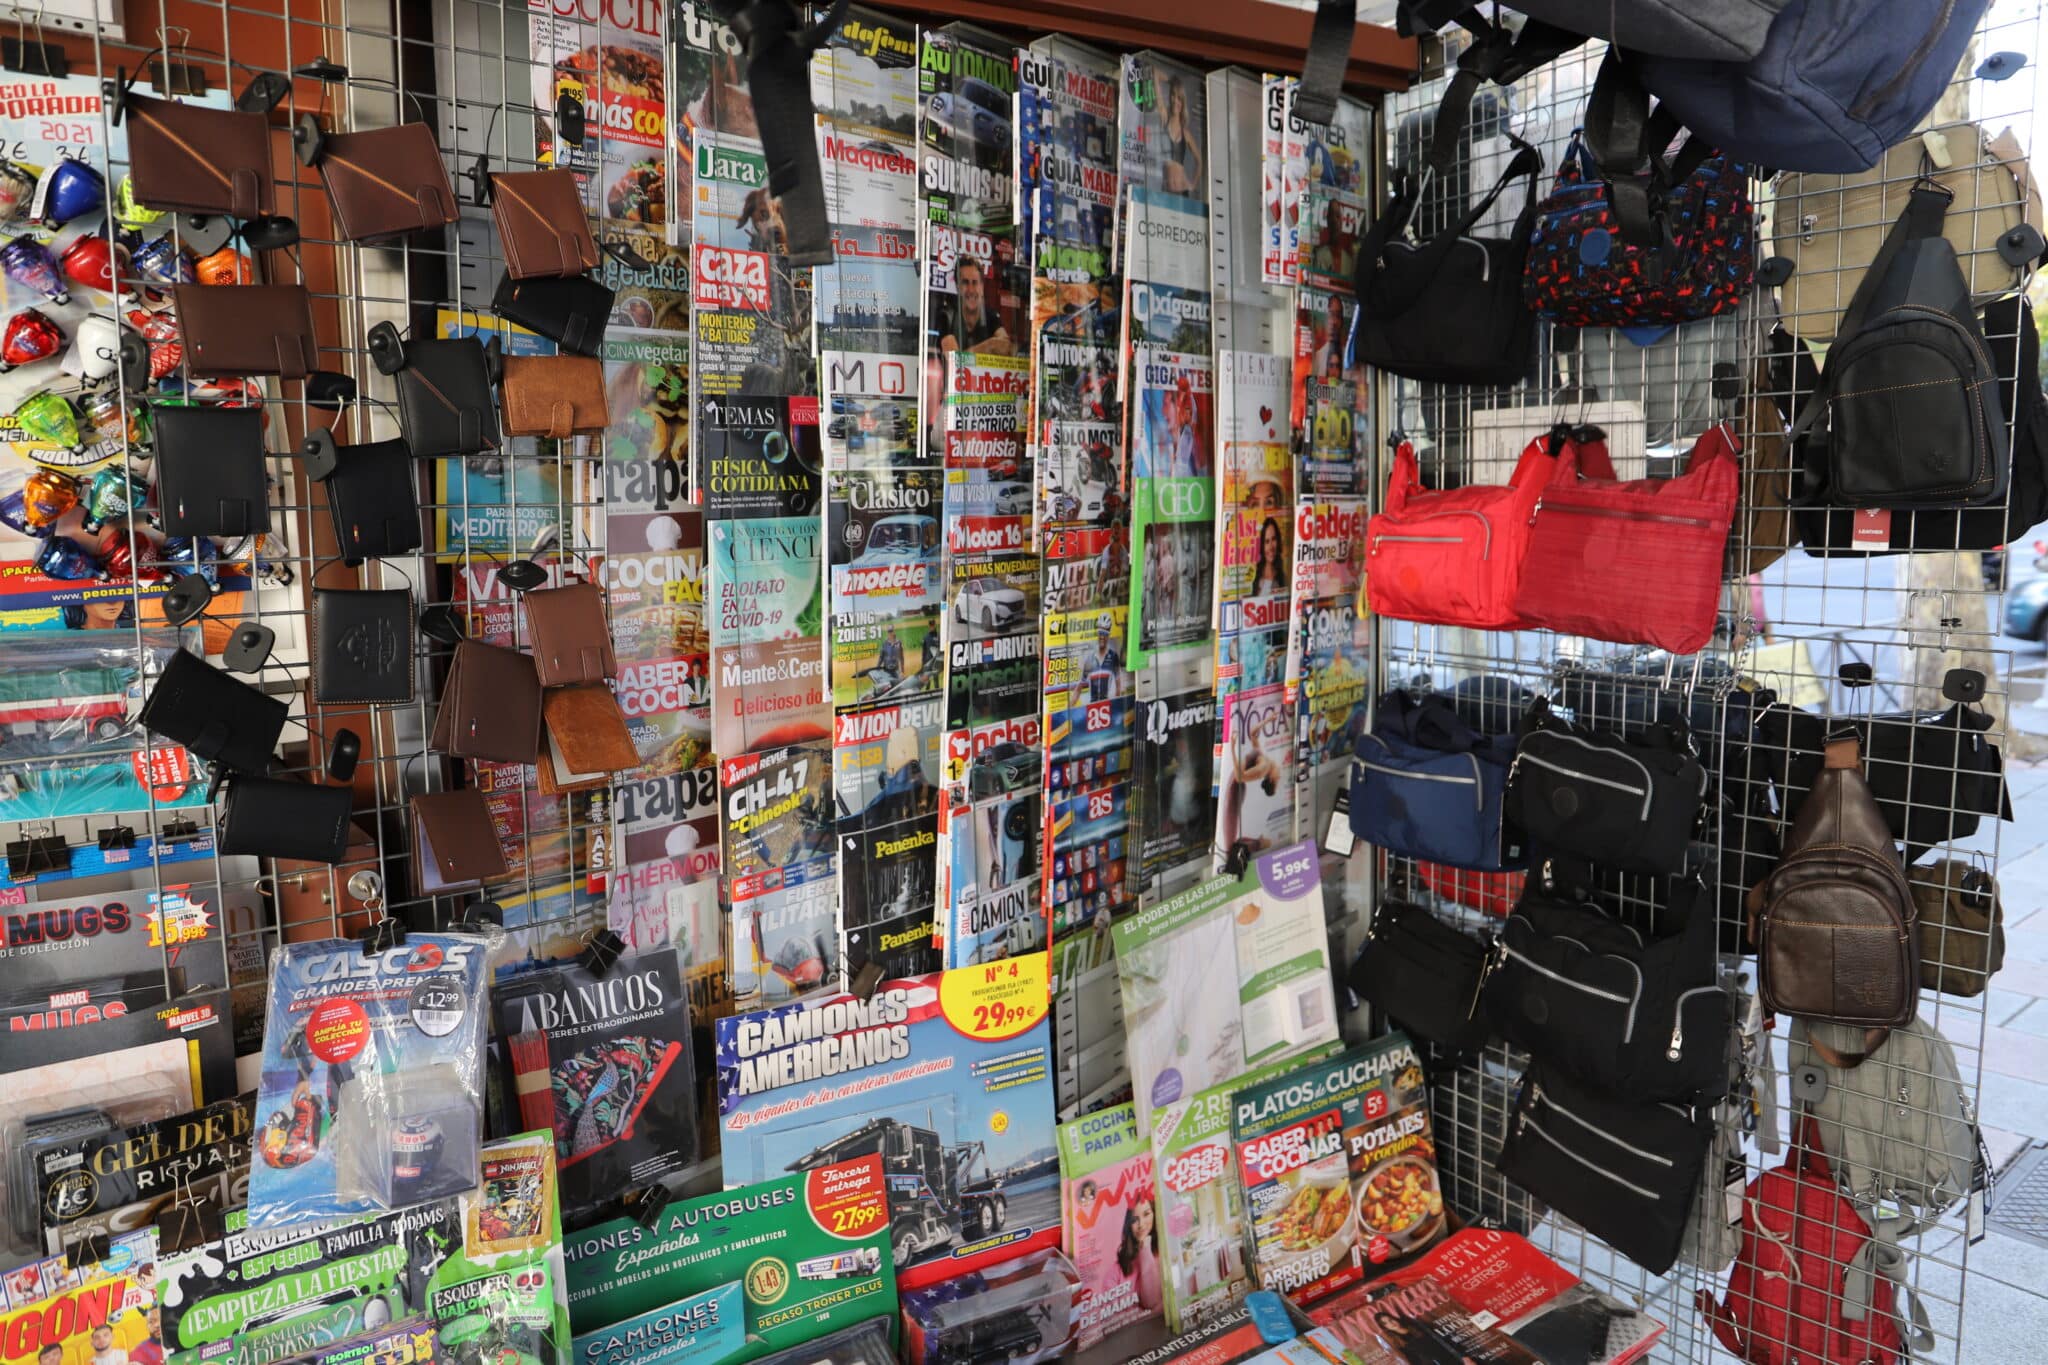 Productos como carteras y bandoleras se venden entre revistas y periódicos.